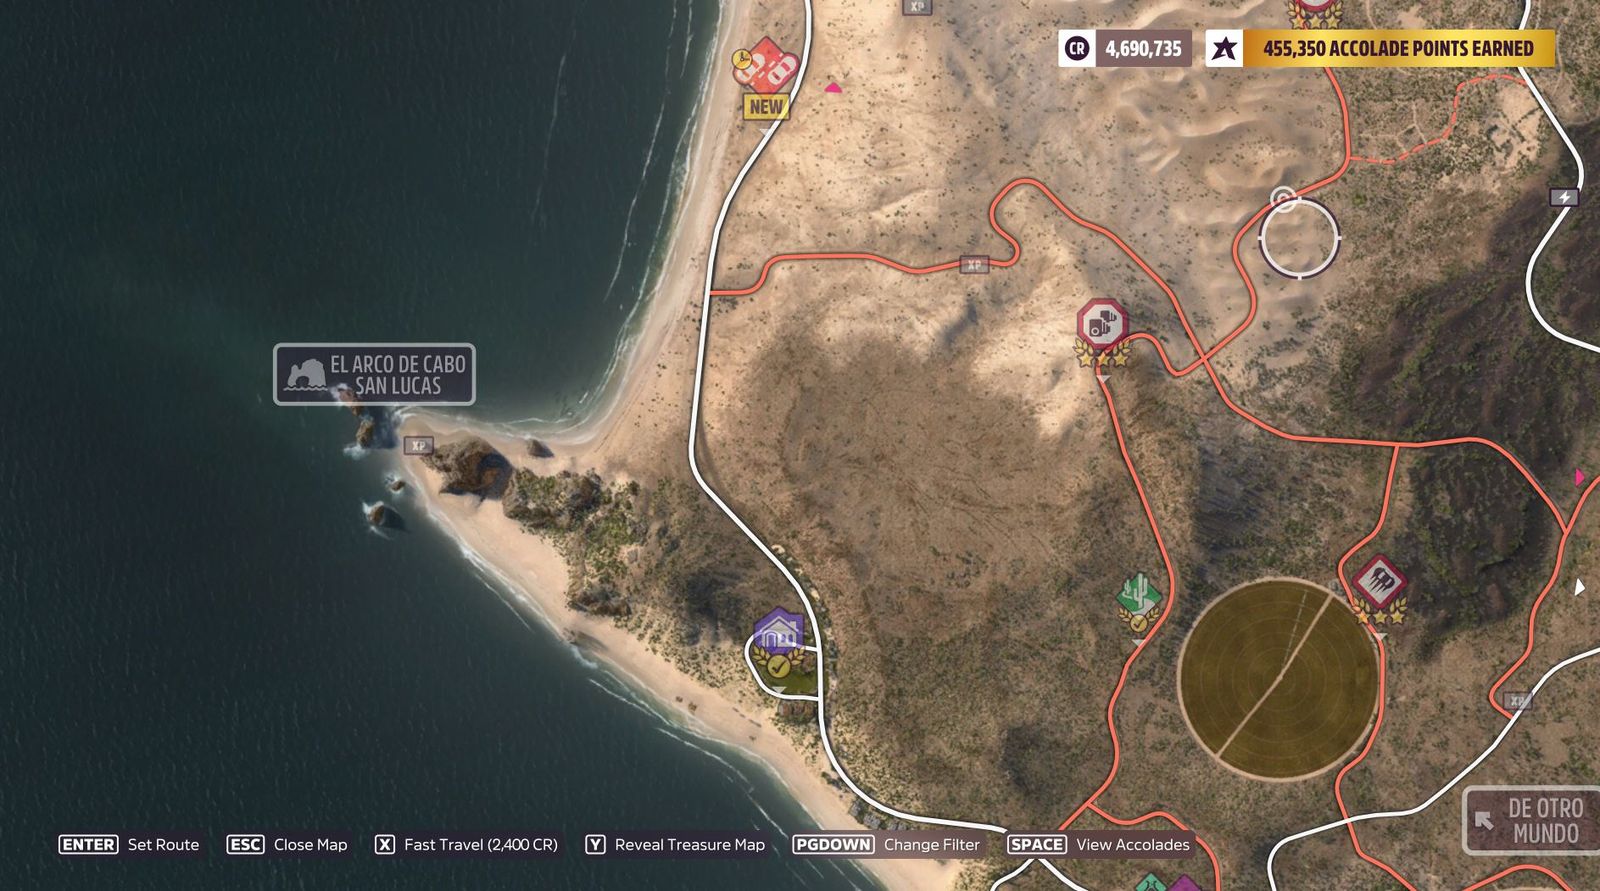 El Arce de Cabo san lucas location in Forza Horizon 5